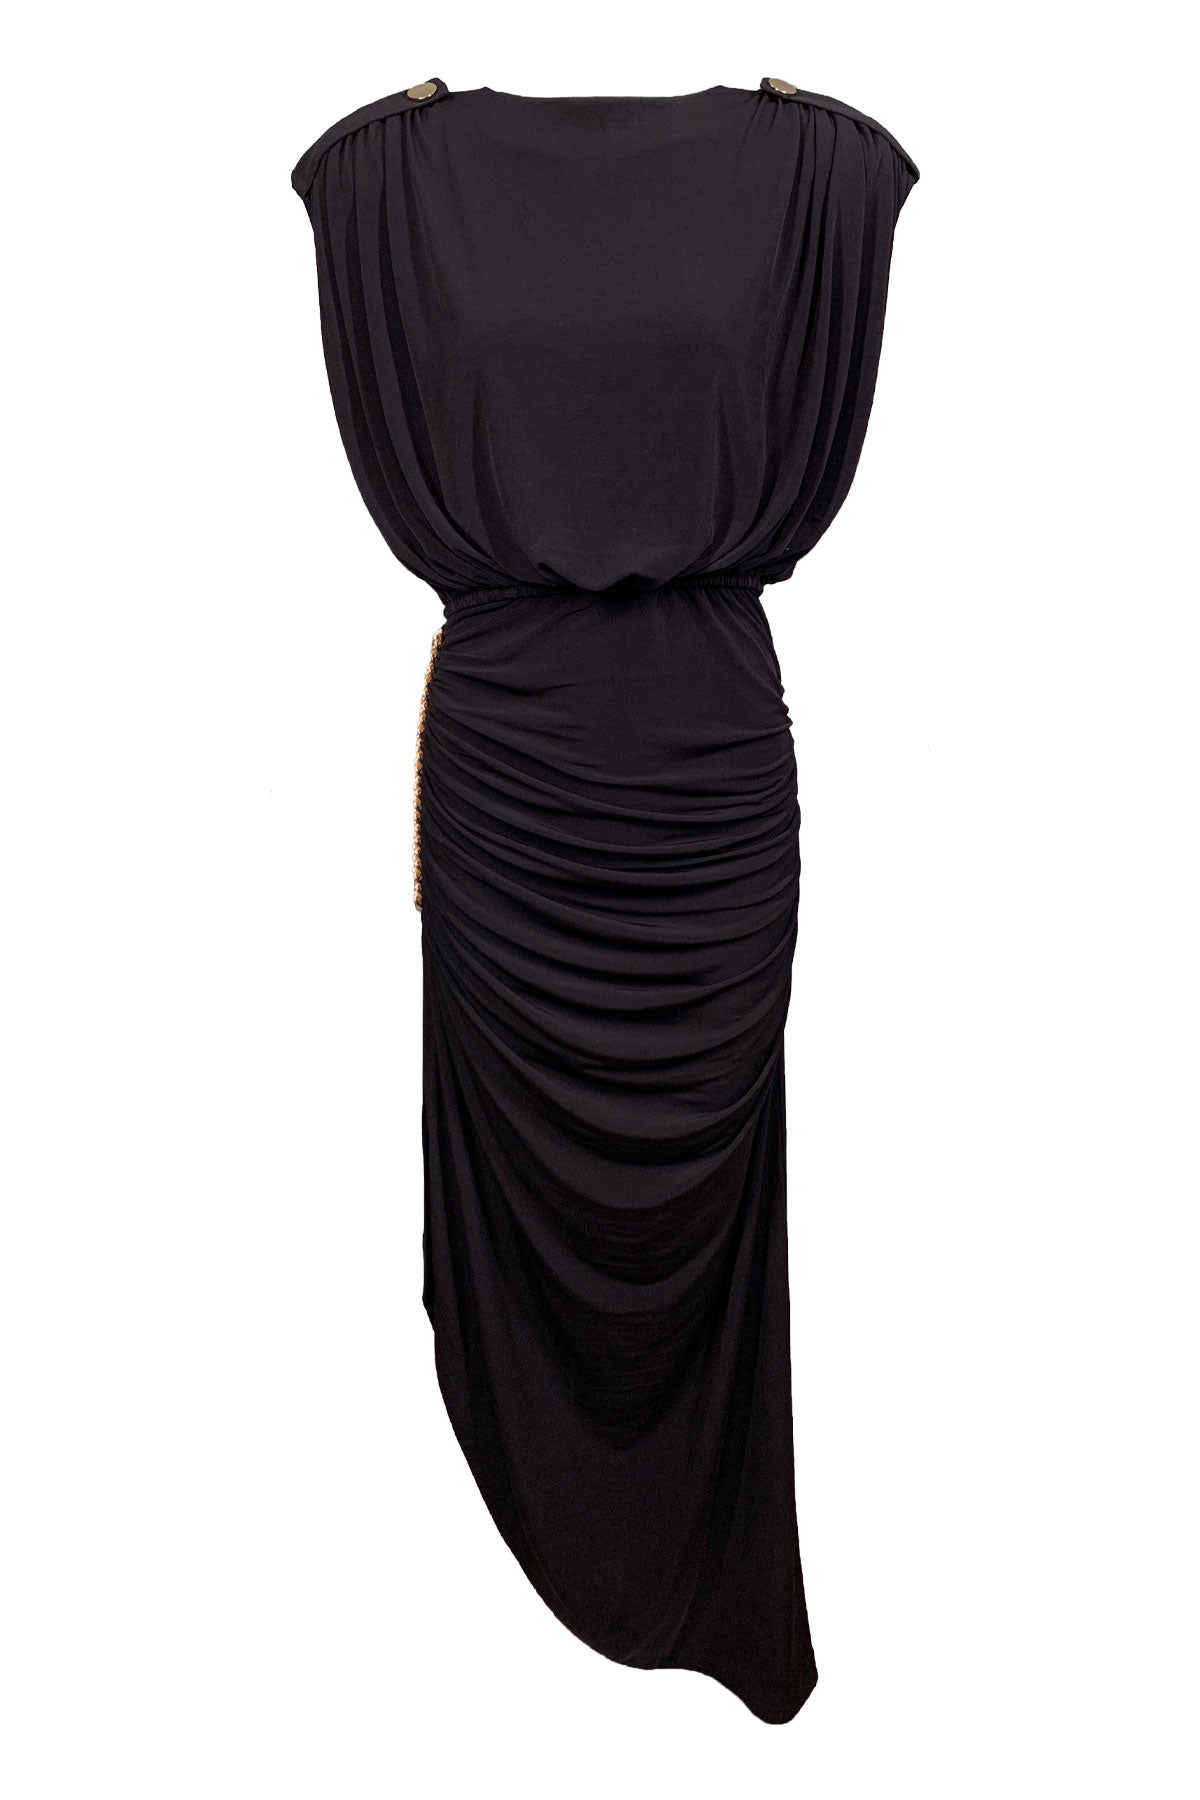 Florence Dress in Black - shop-olivia.com